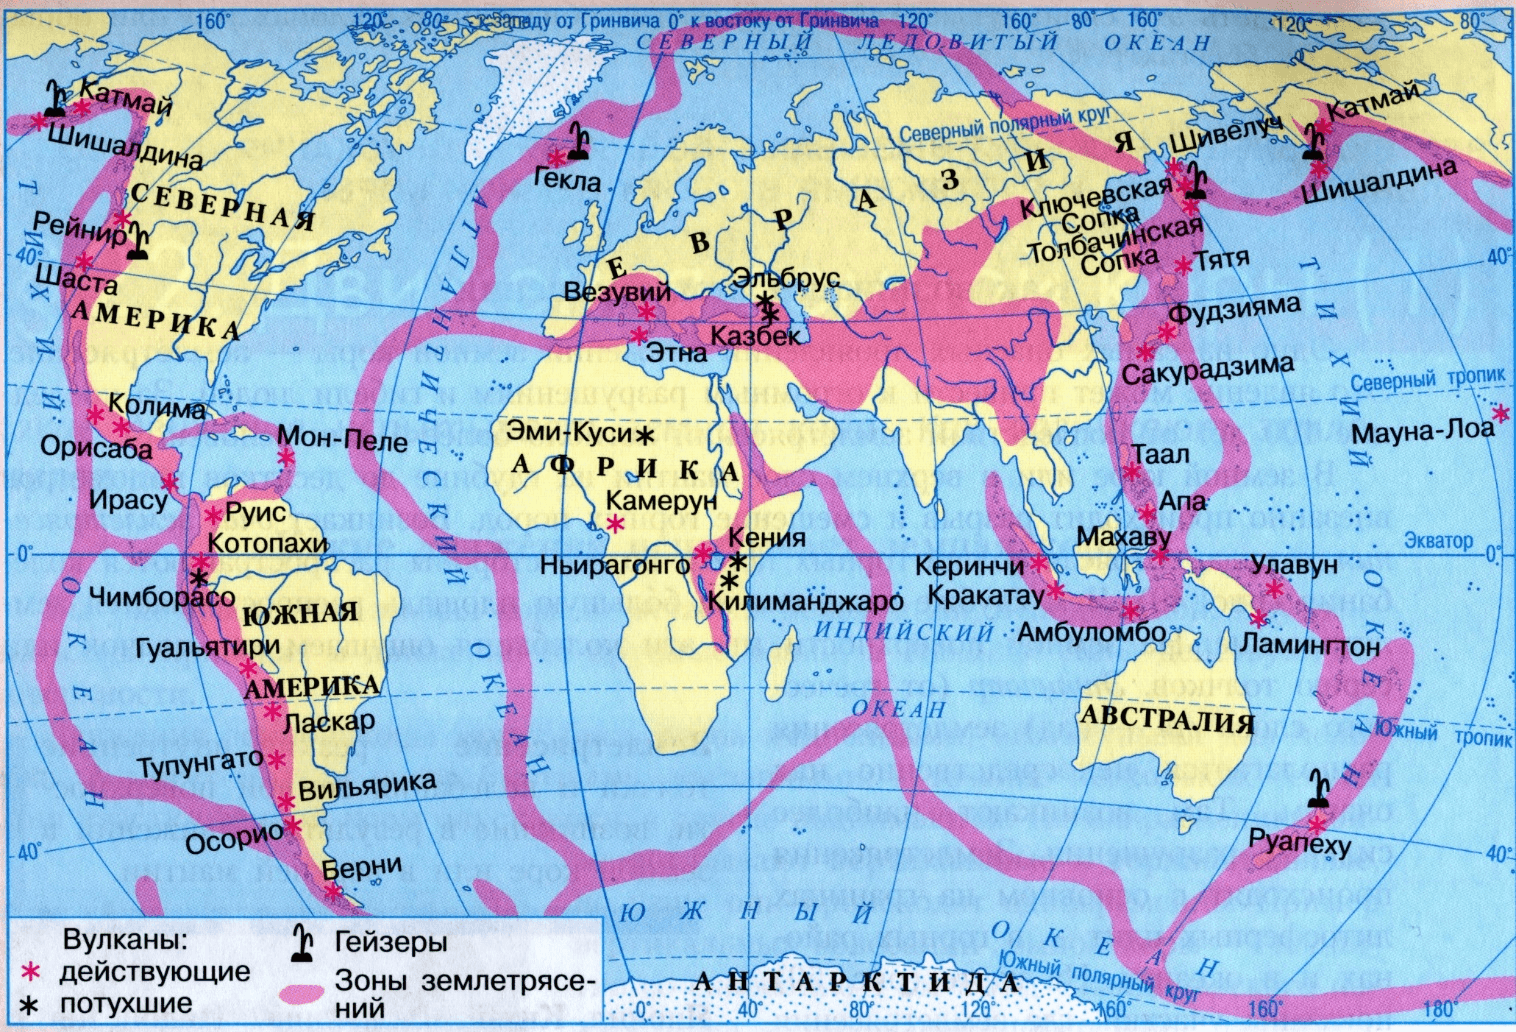 Зоны землетрясений на карте мира